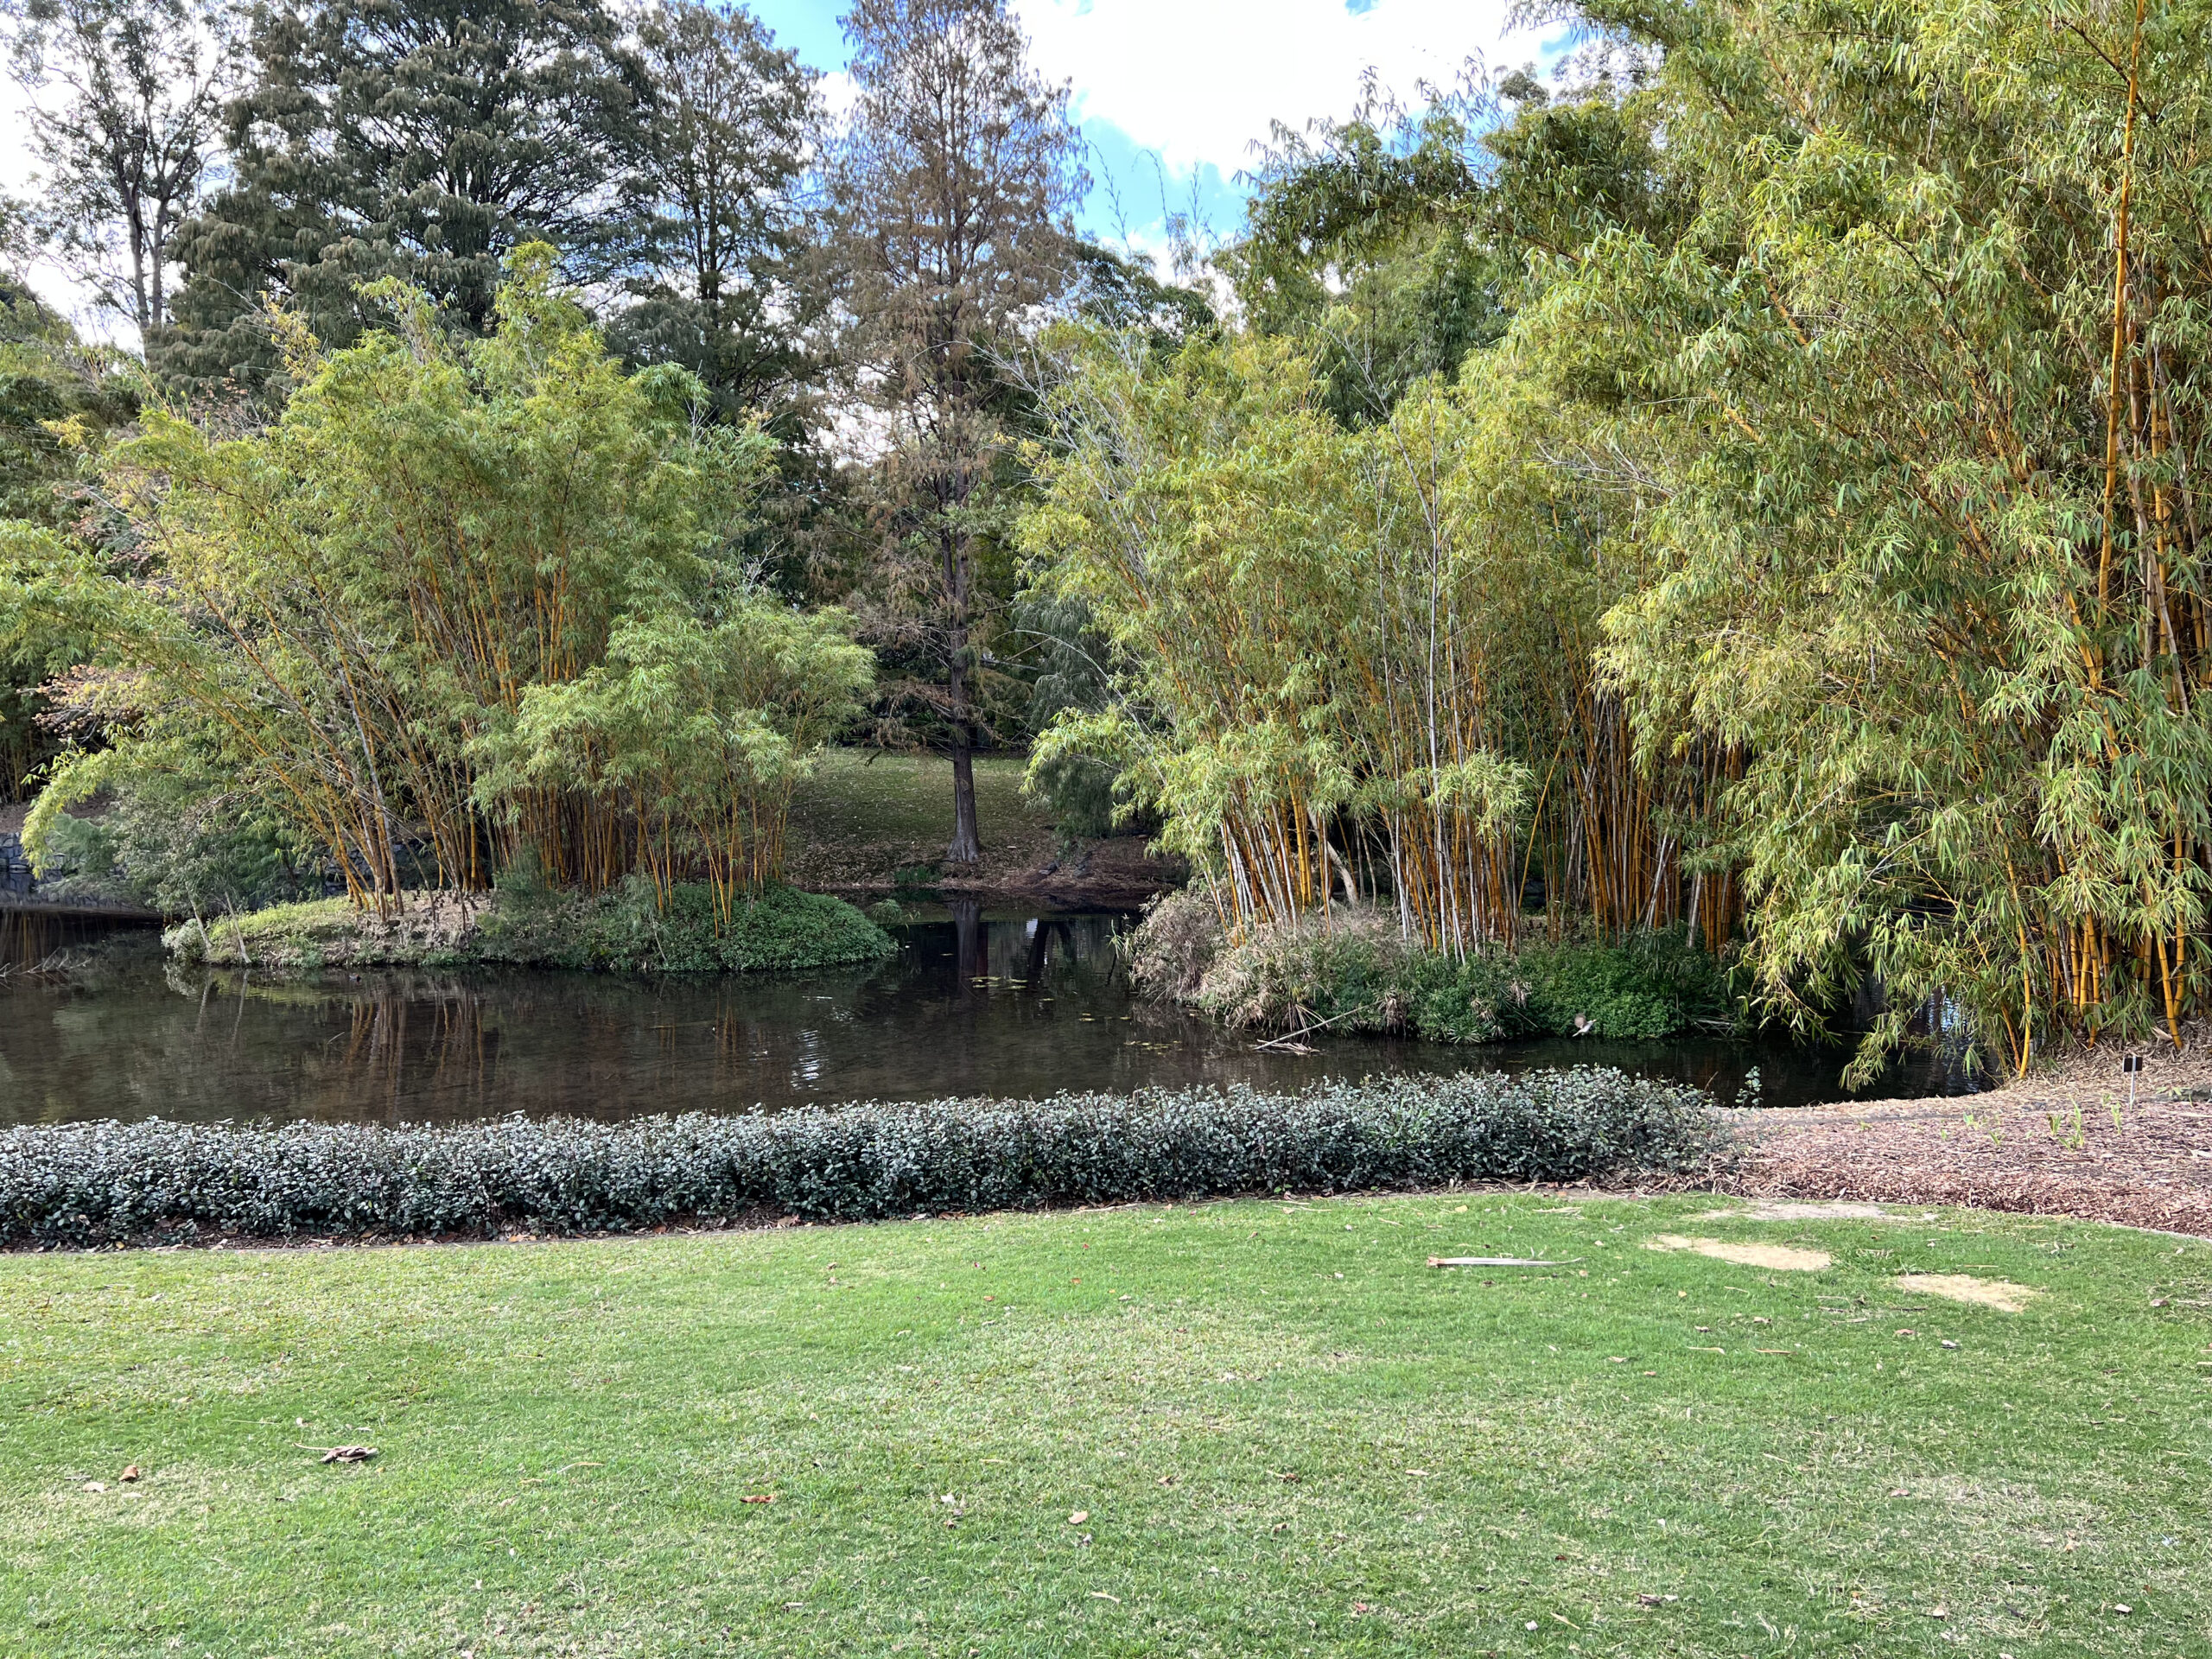 Brisbane Botanic Gardens at Mount Coot-Tha